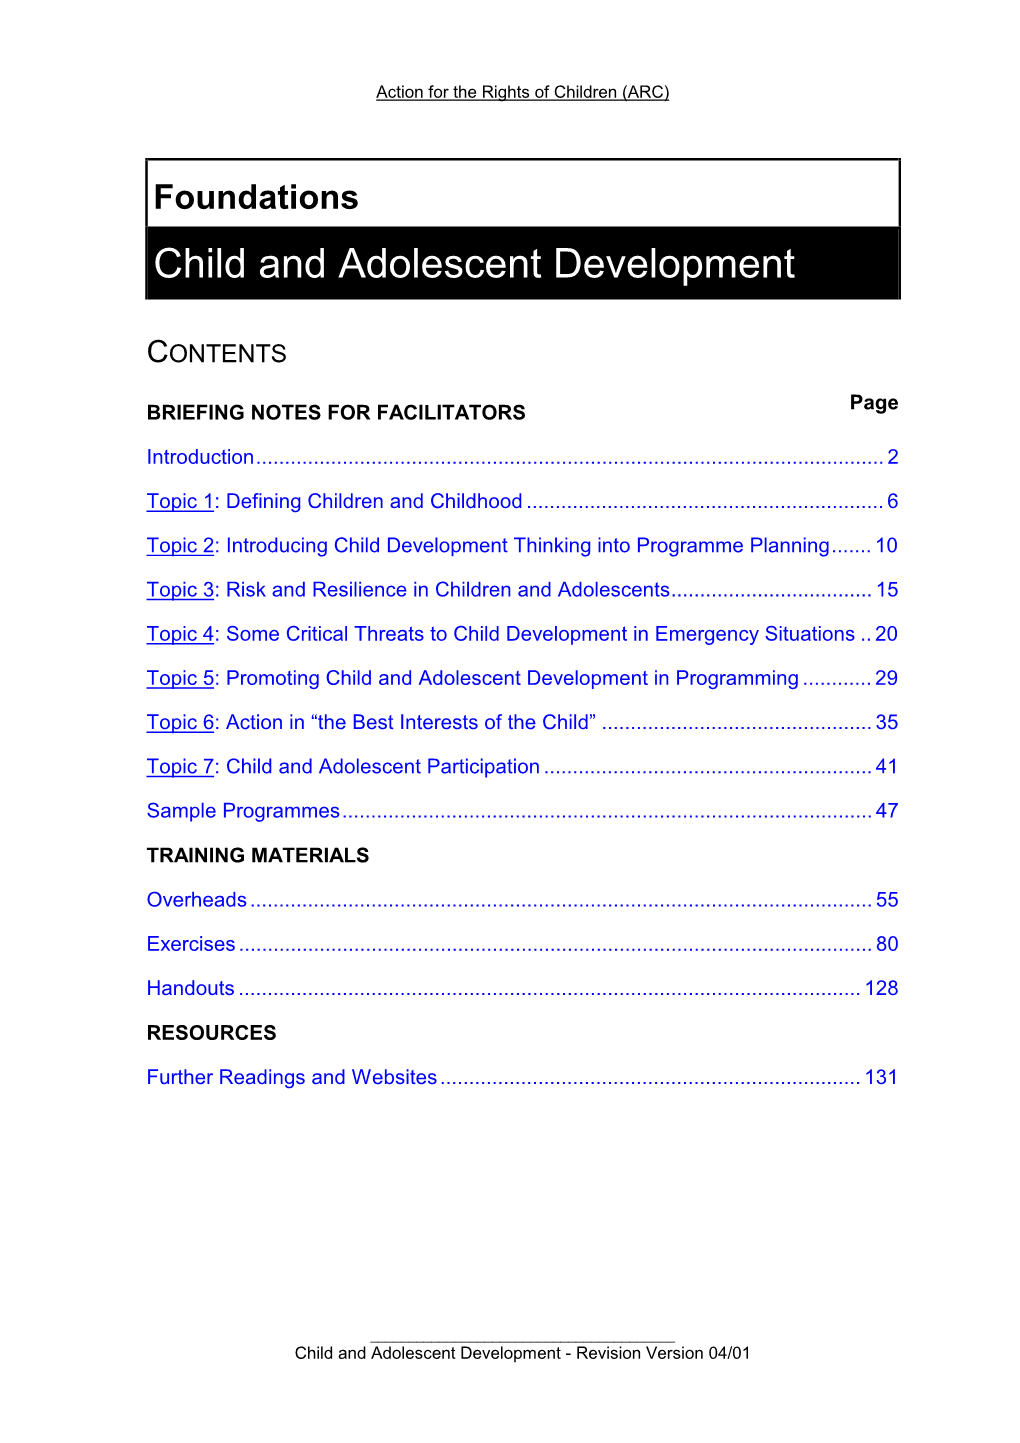 Child and Adolescent Development Module